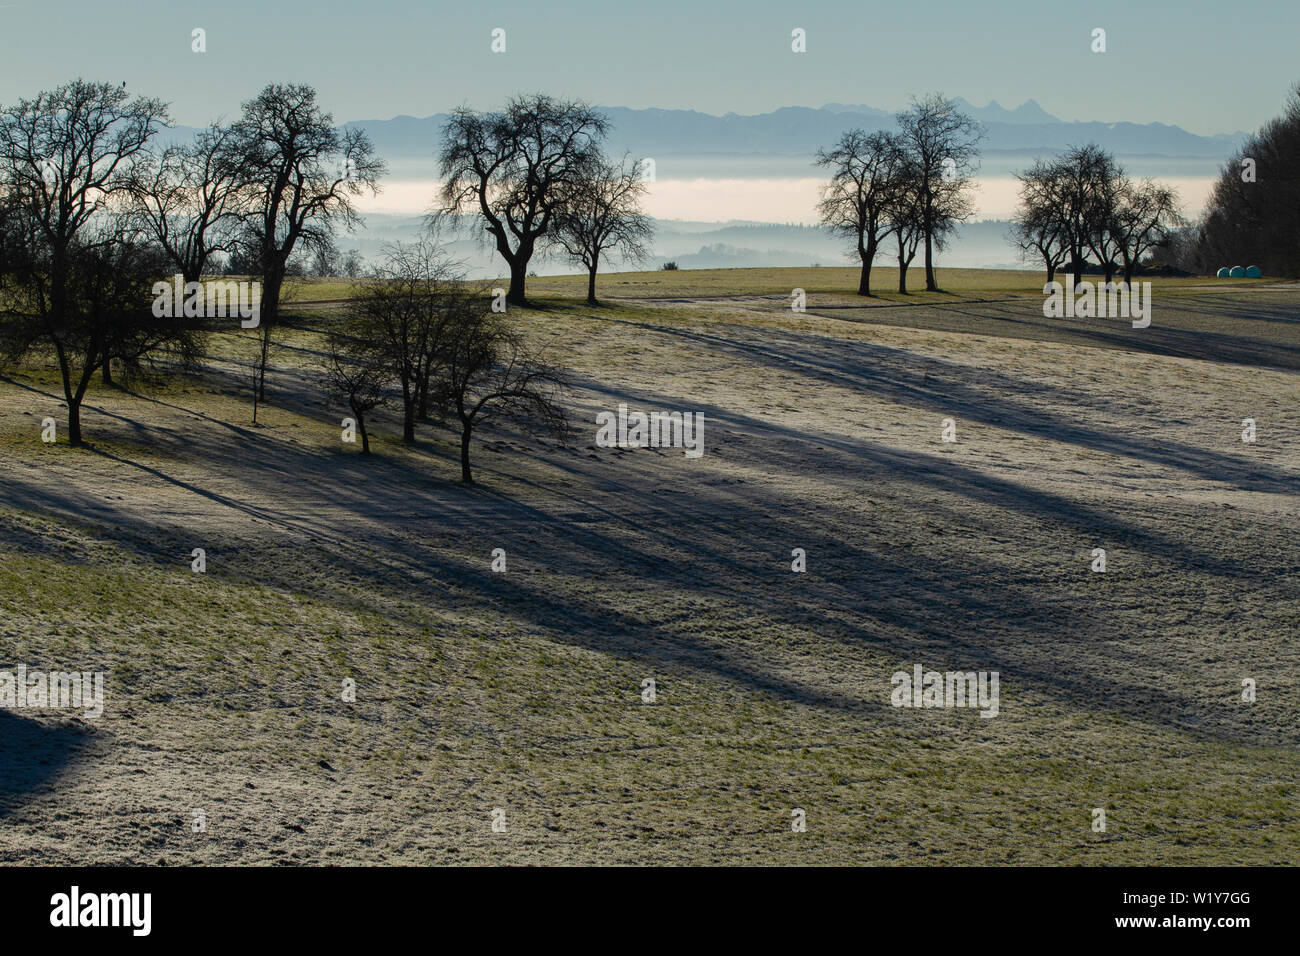 Deshojado árboles casting larga sombra sobre una helada, abundante campo después de la cosecha en una luz fogy y cordillera en el fondo Foto de stock